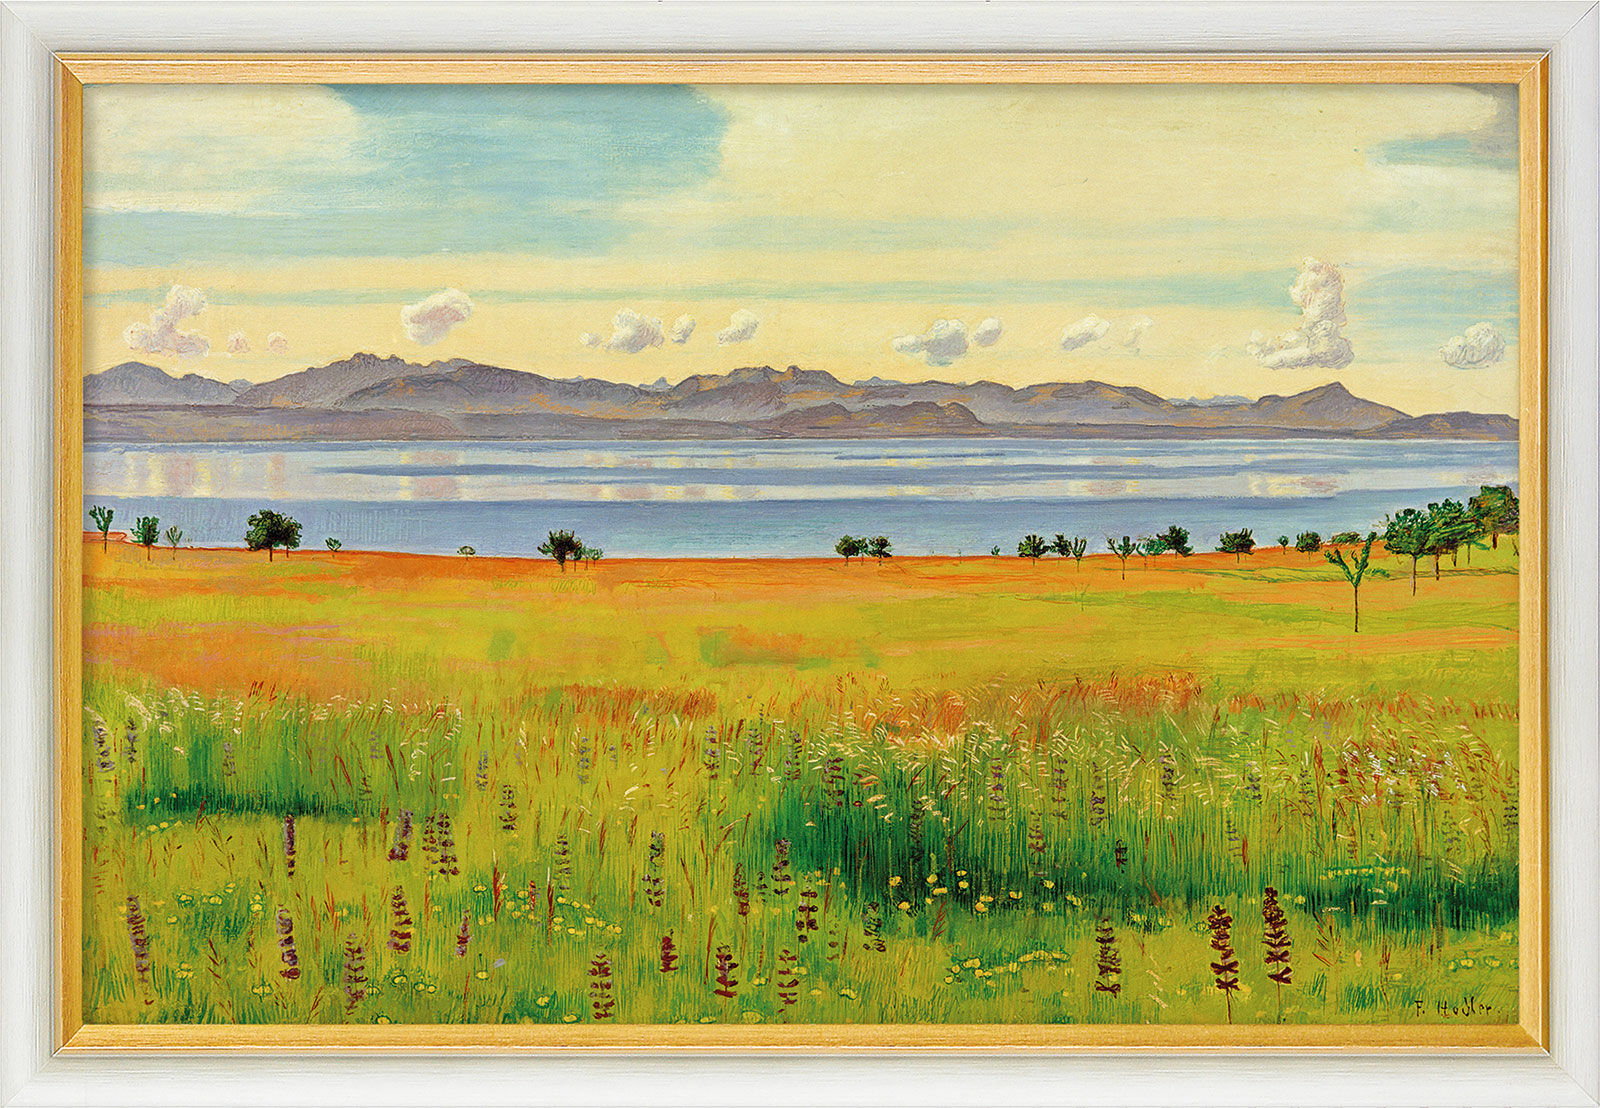 Picture "Lake Geneva from Saint-Prex" (1901), framed by Ferdinand Hodler